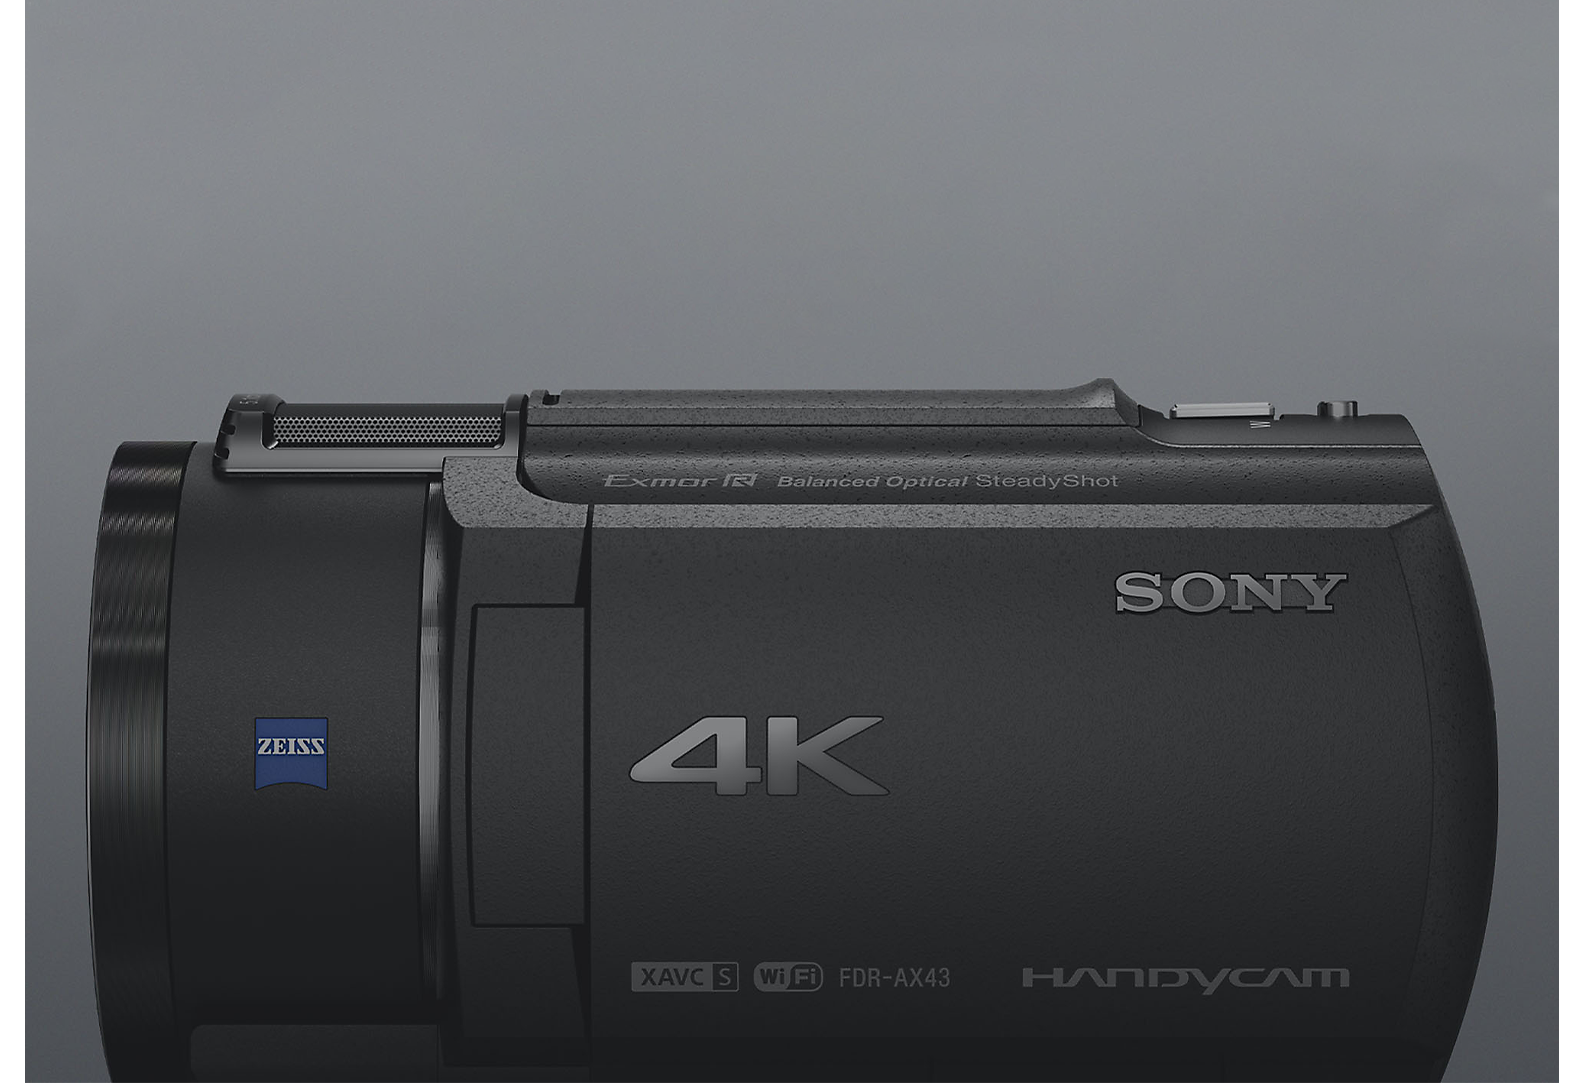 Vista lateral da câmara de vídeo Handycam 4K Sony